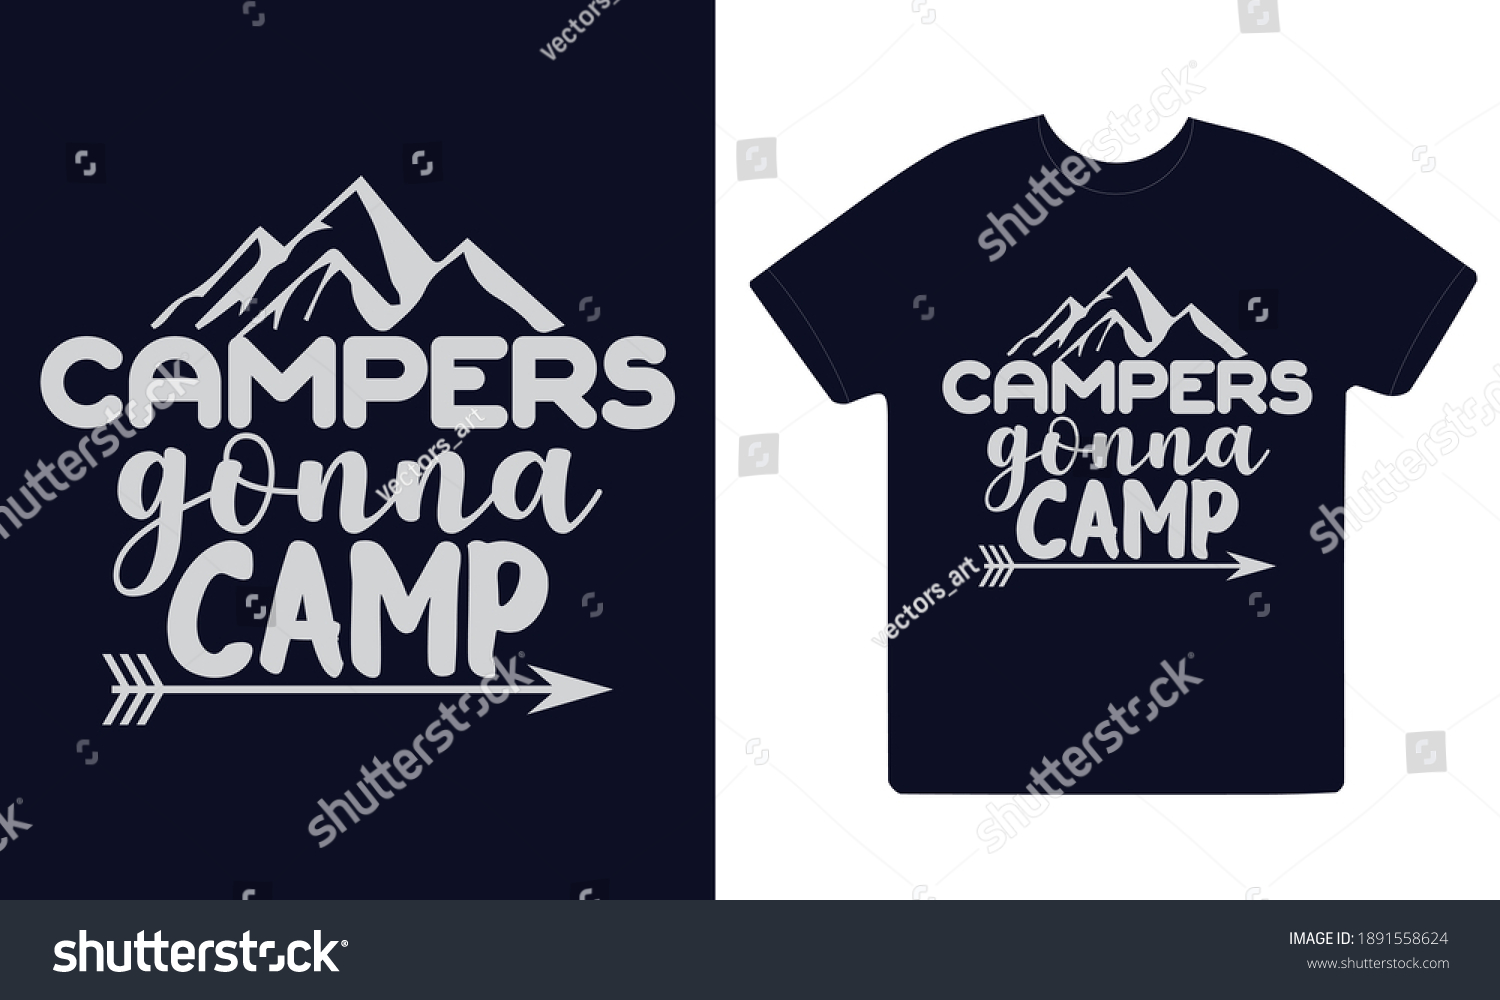 SVG of Campers gonna camp, summer svg, ai, eps, jpeg, Png, dxf, Pdf, Happy Camper SVG, Hiking Mountains Campfire Tent T-Shirt, instant download, Camp life SVG, Digital file. svg